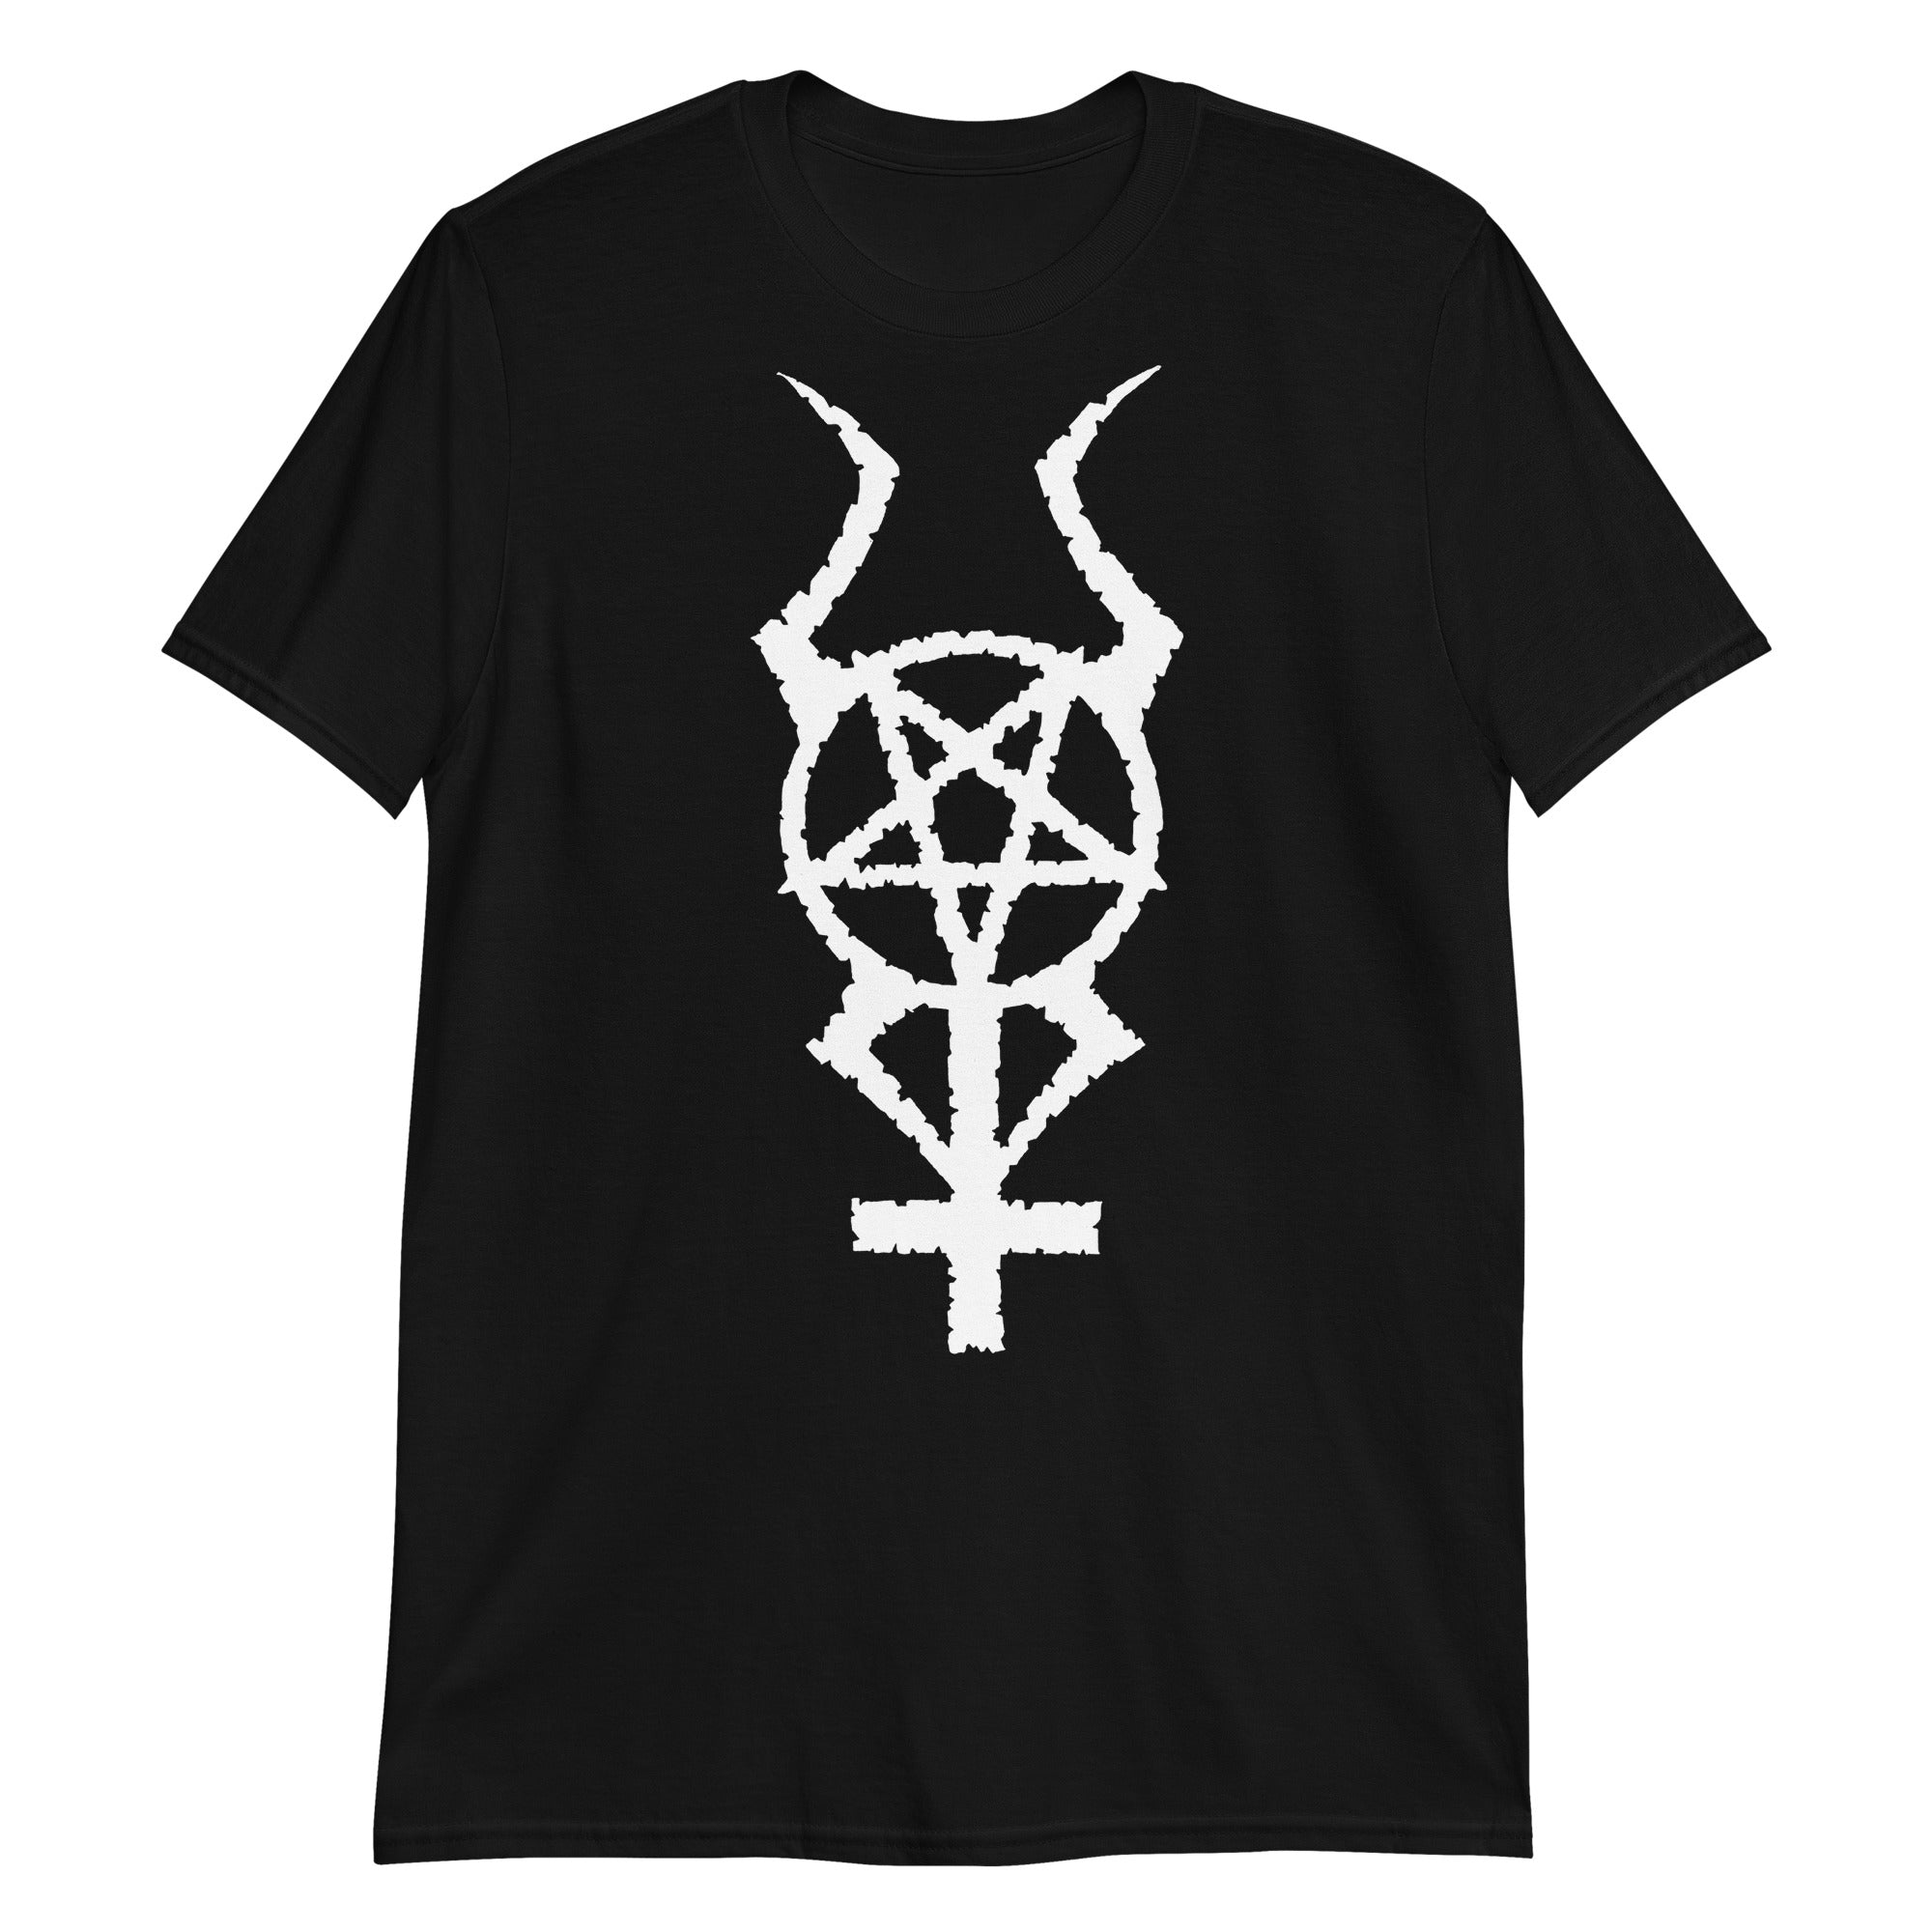 White Horned Pentacross Ritual Pentagram Cross Men's Short Sleeve T-Shirt - Edge of Life Designs